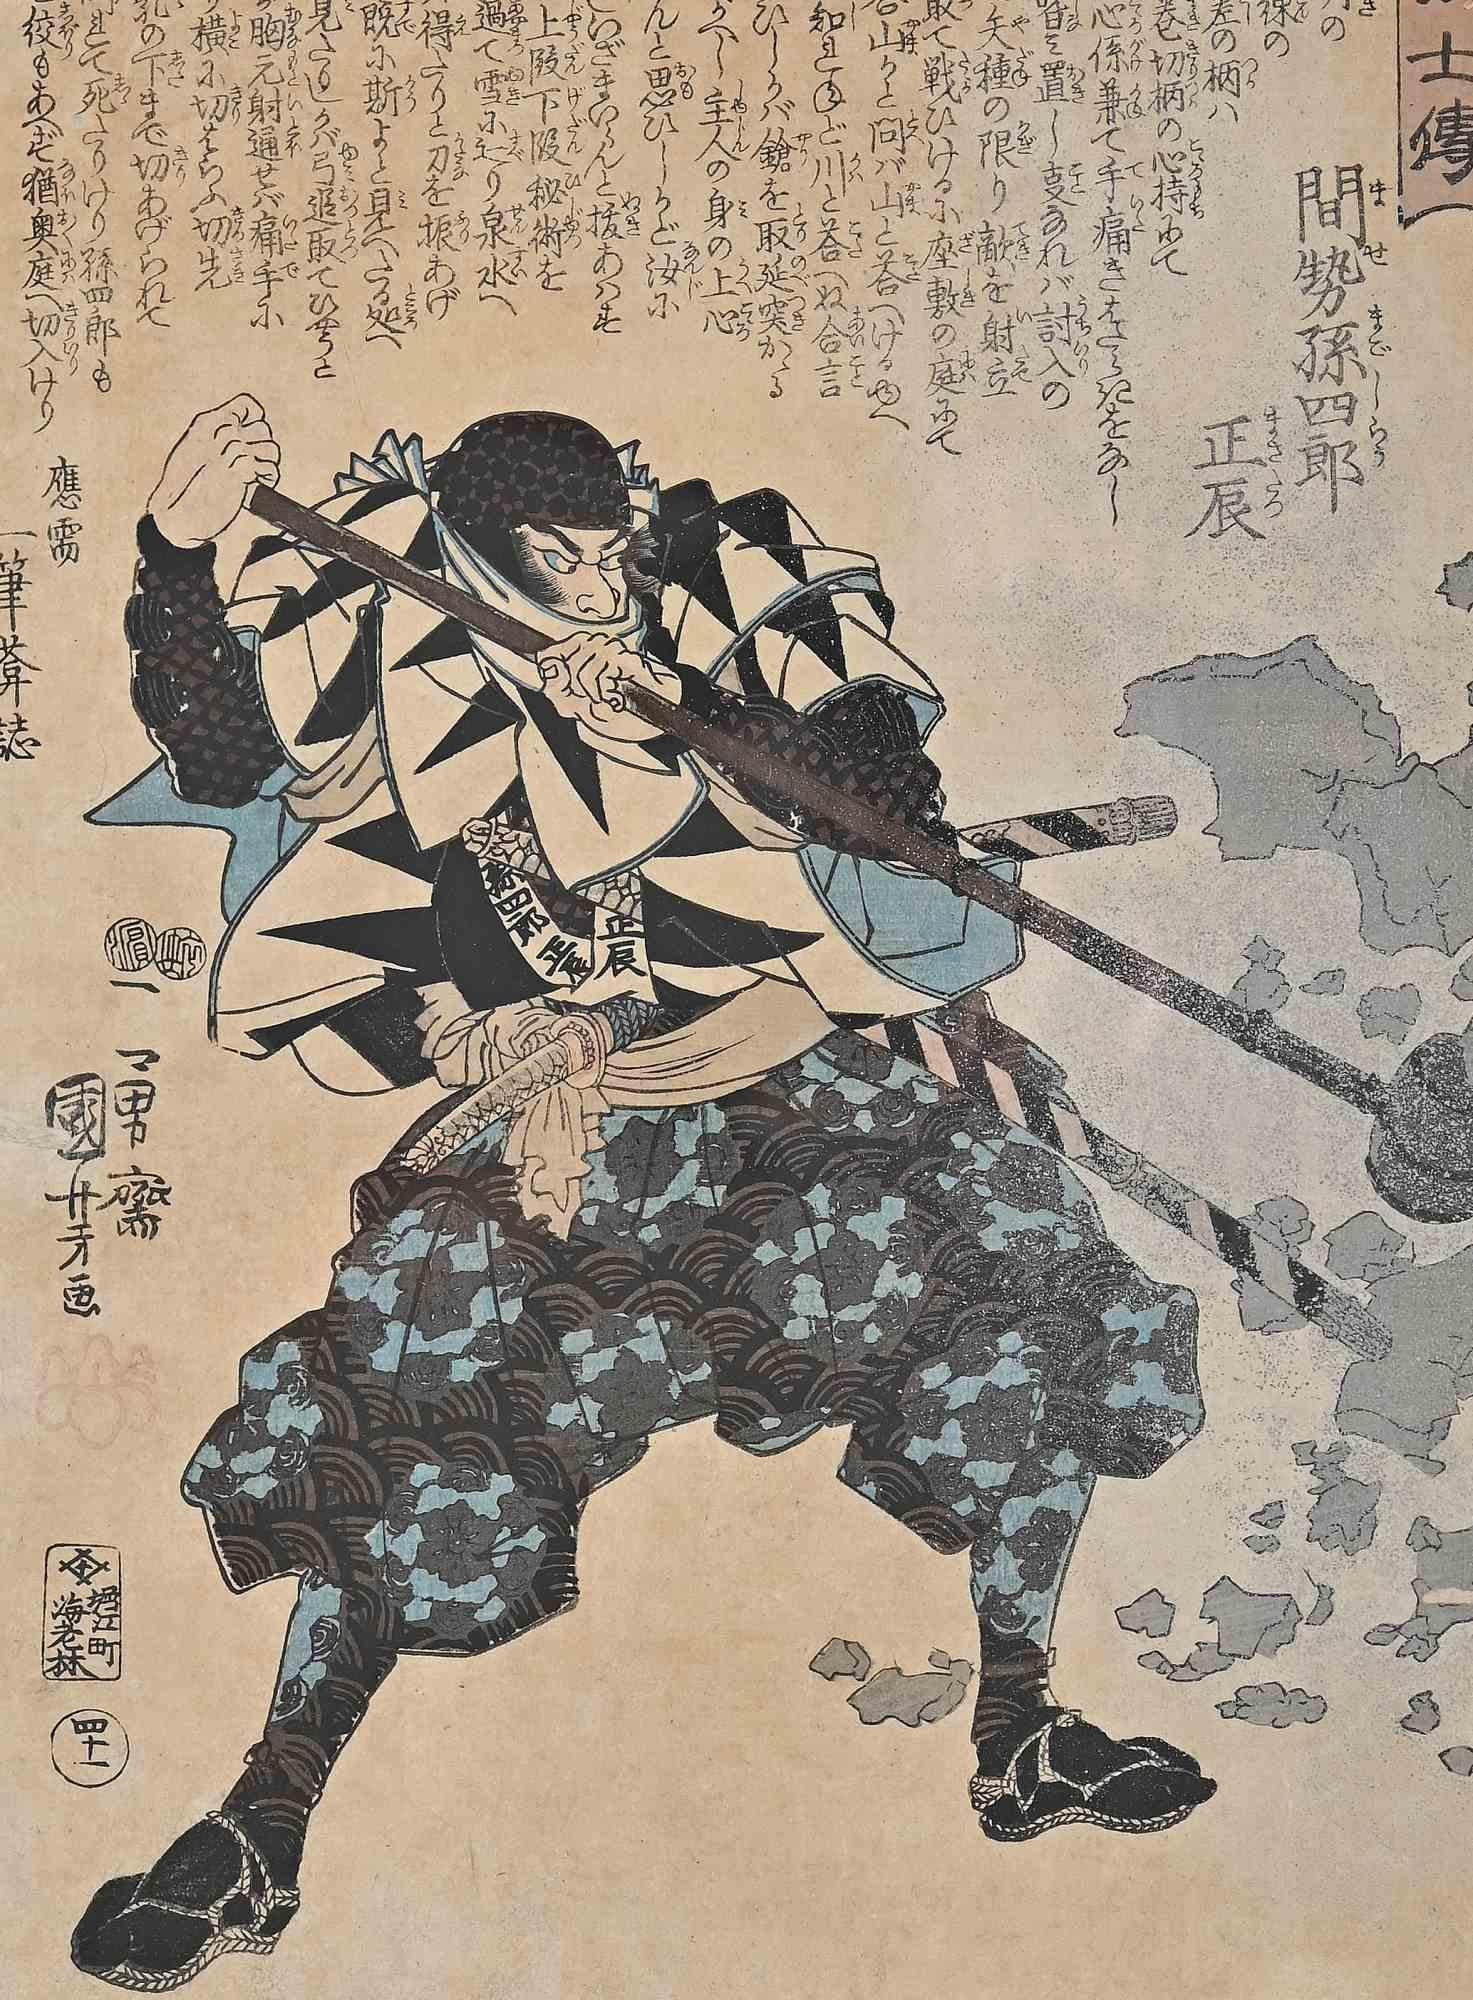 Mase Magoshiro Masatatsu ist ein Holzschnitt von Utagawa Kuniyoshi aus dem Jahr 1847.

Inklusive Holz- und Lederrahmen.

Guter Zustand: einige Flecken und Vergilbung des Papiers.
